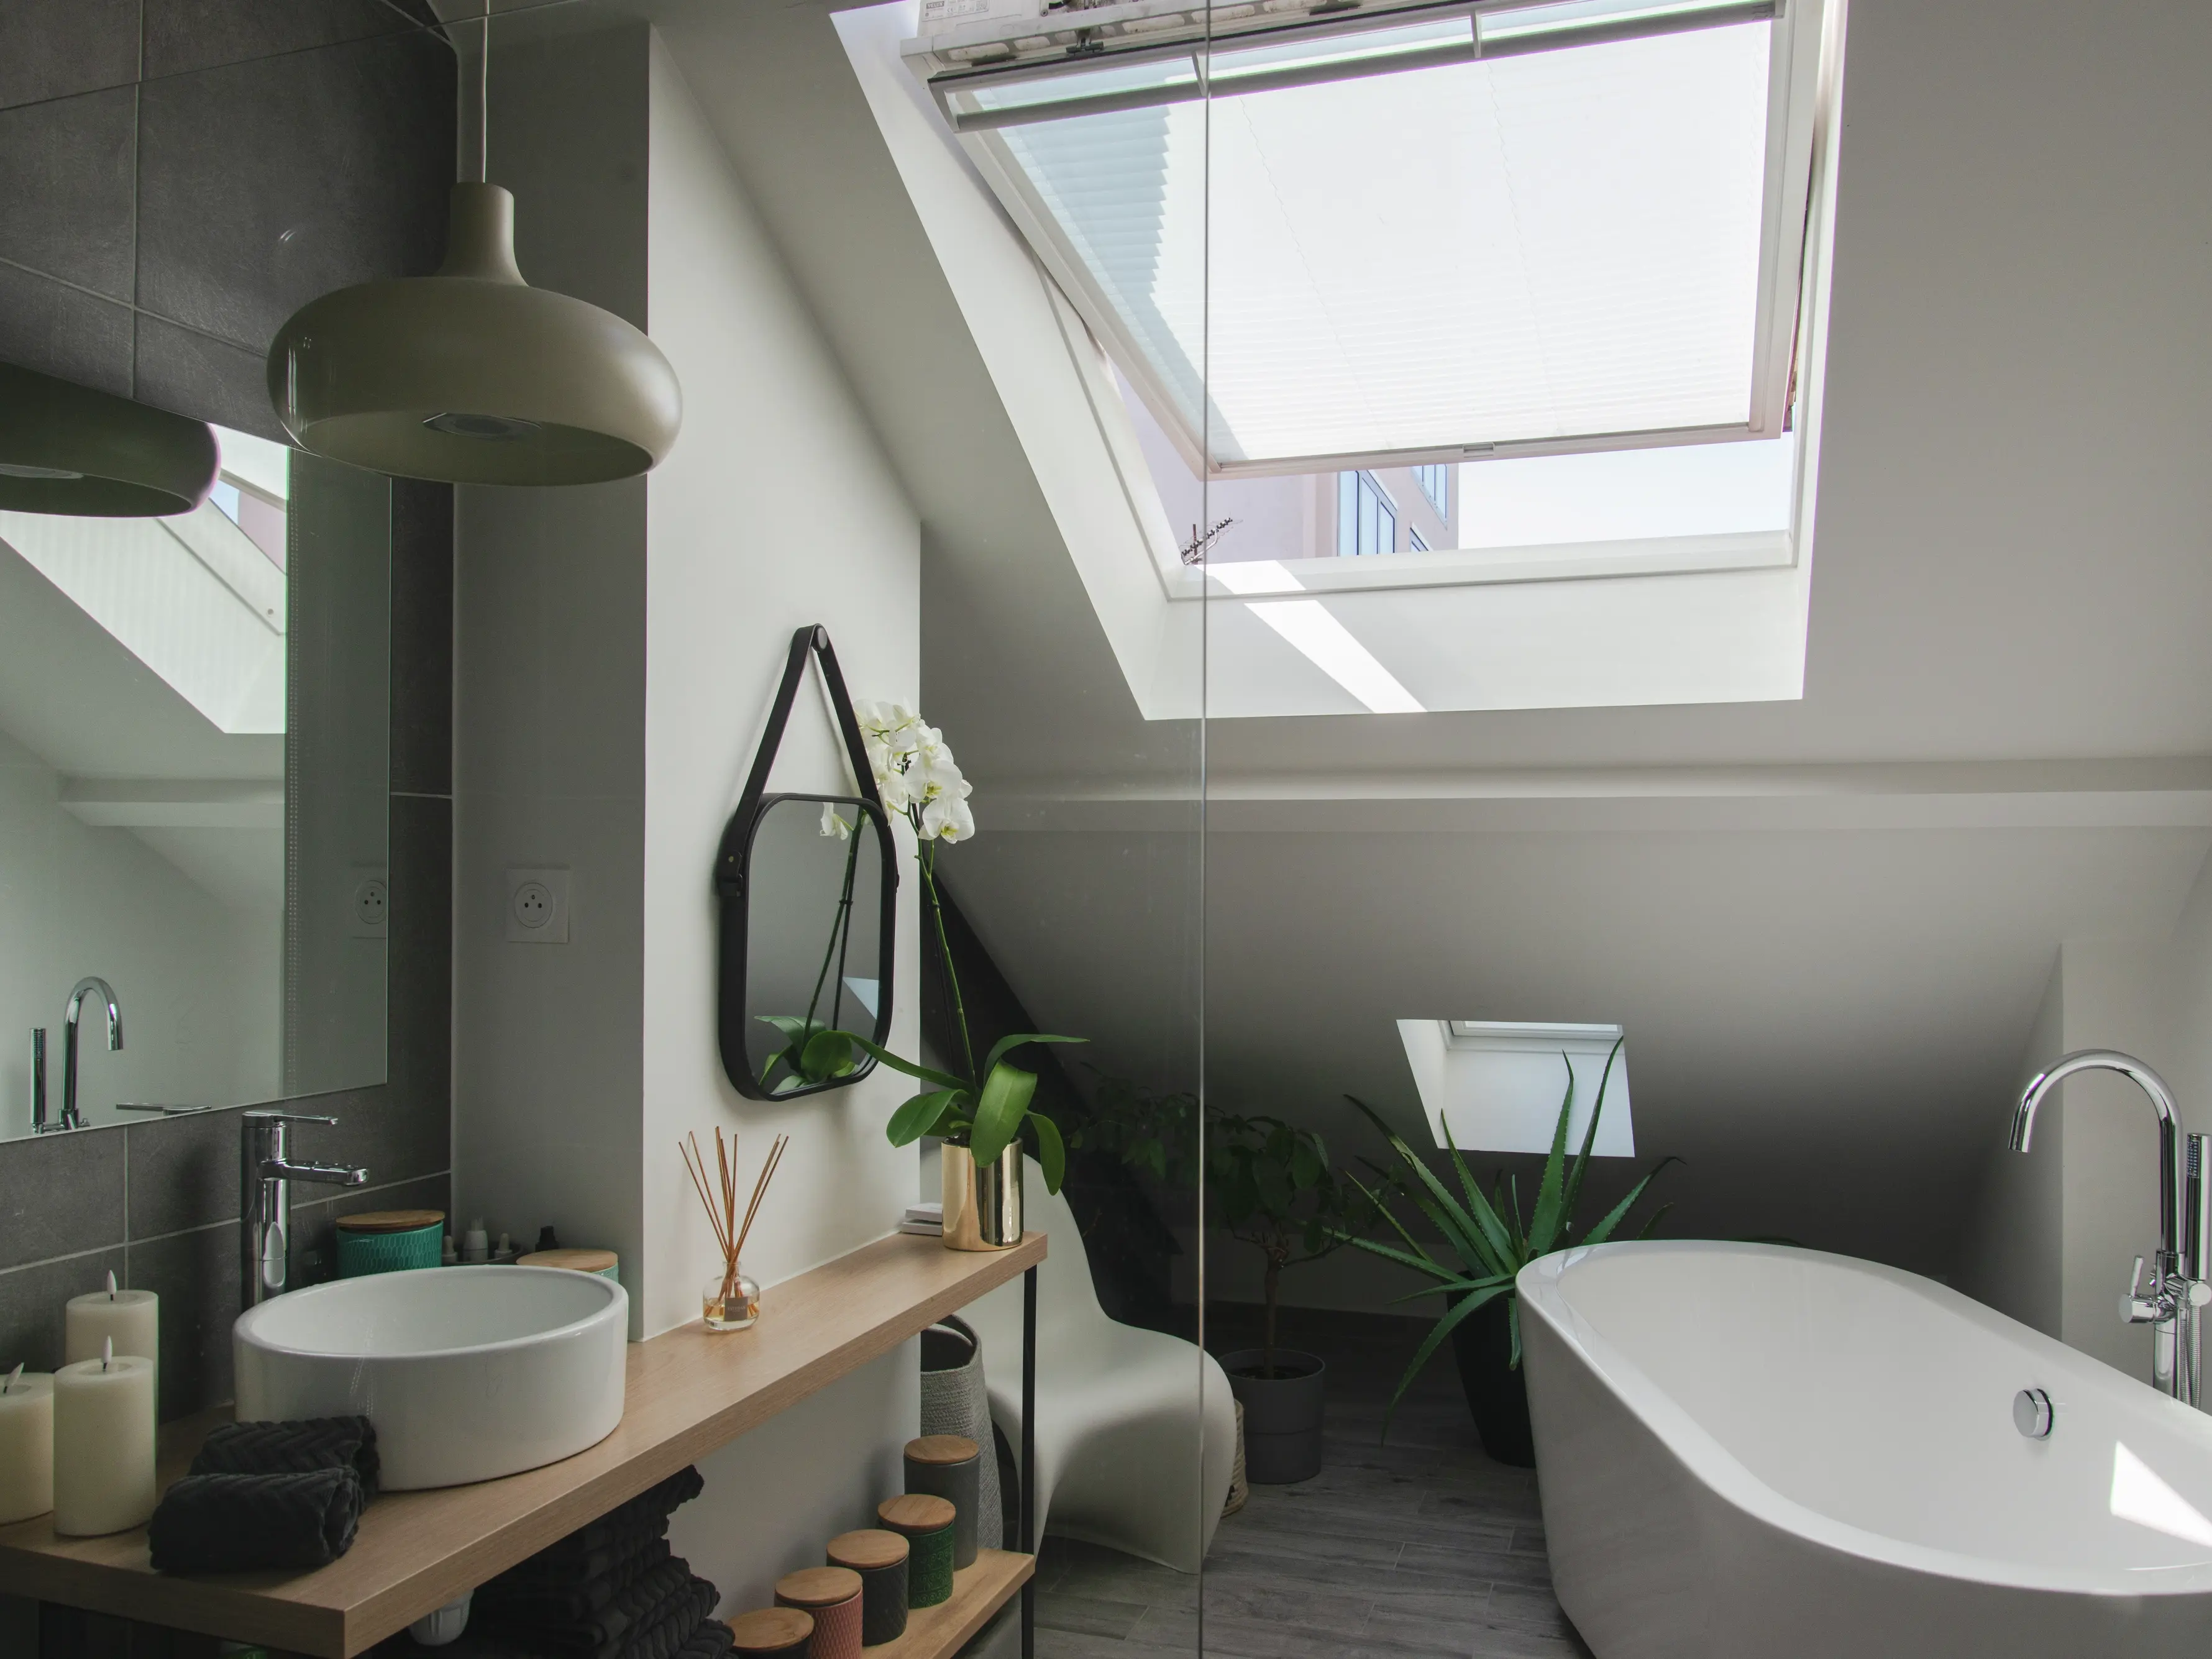 Salle de bain contemporaine avec murs et sol en nuances de gris, une vasque blanche sur un plan de travail en bois, et une fenêtre de toit ouverte laissant entrer la lumière.